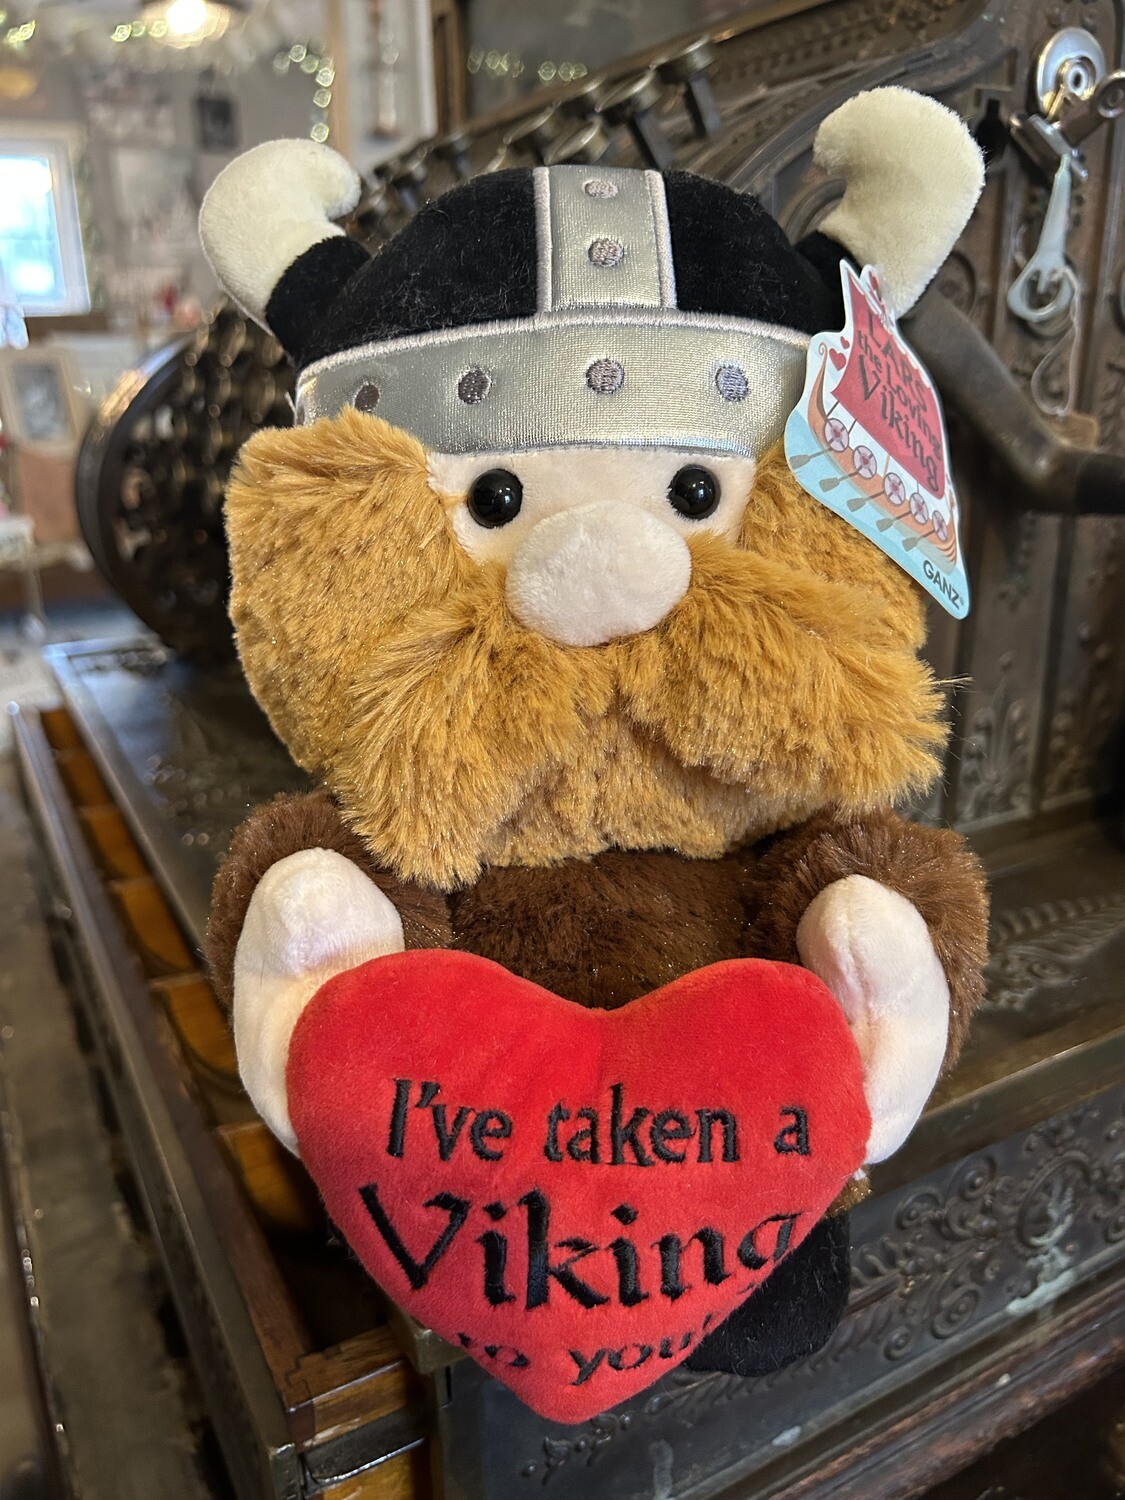 Lars the Loving Viking